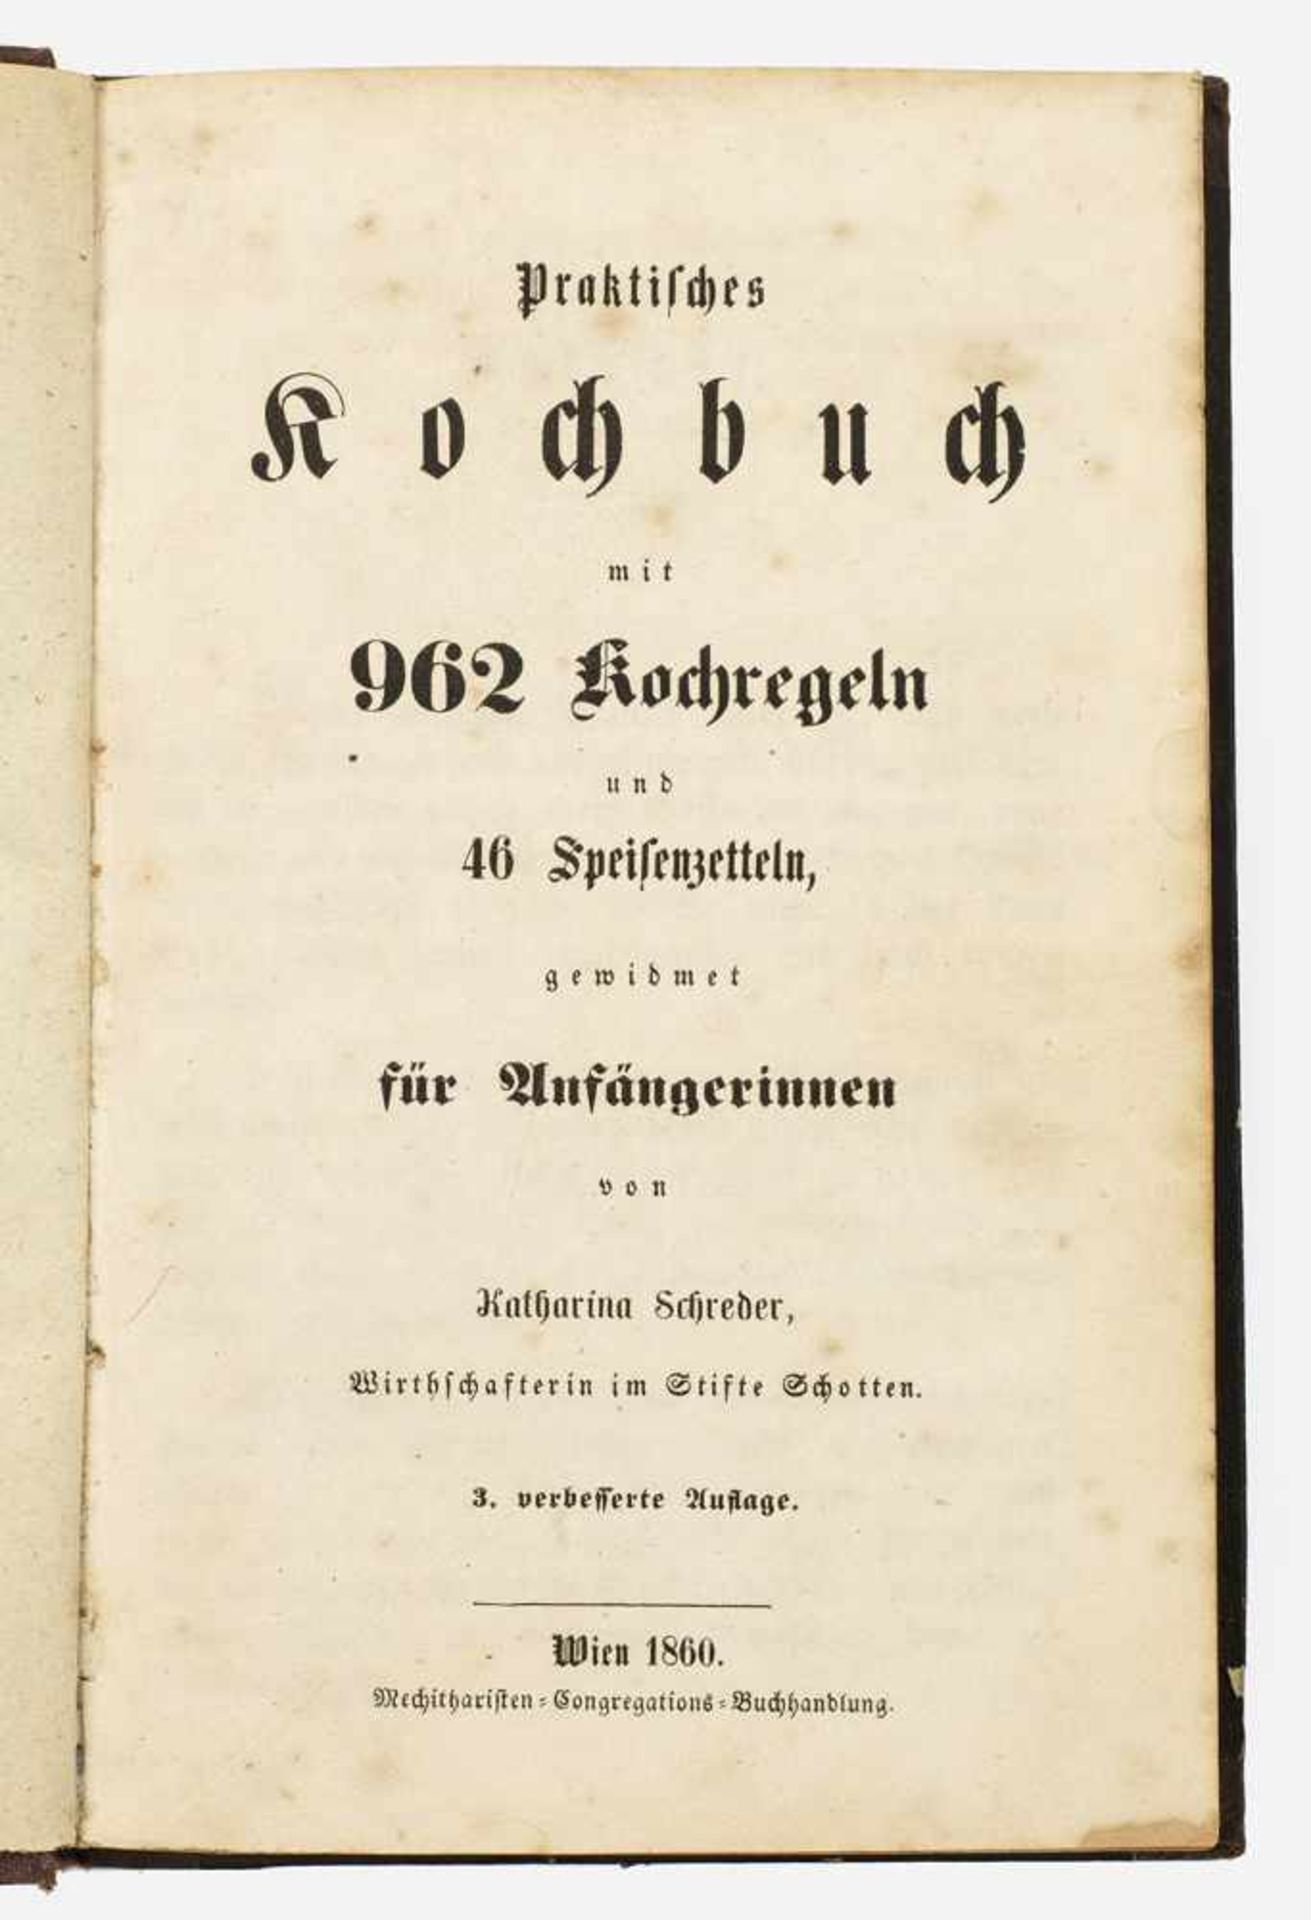 Katharina Schreder: "Praktisches Kochbuch mit 962 Kochregelnund 46 Speisenzetteln, gewidmet für